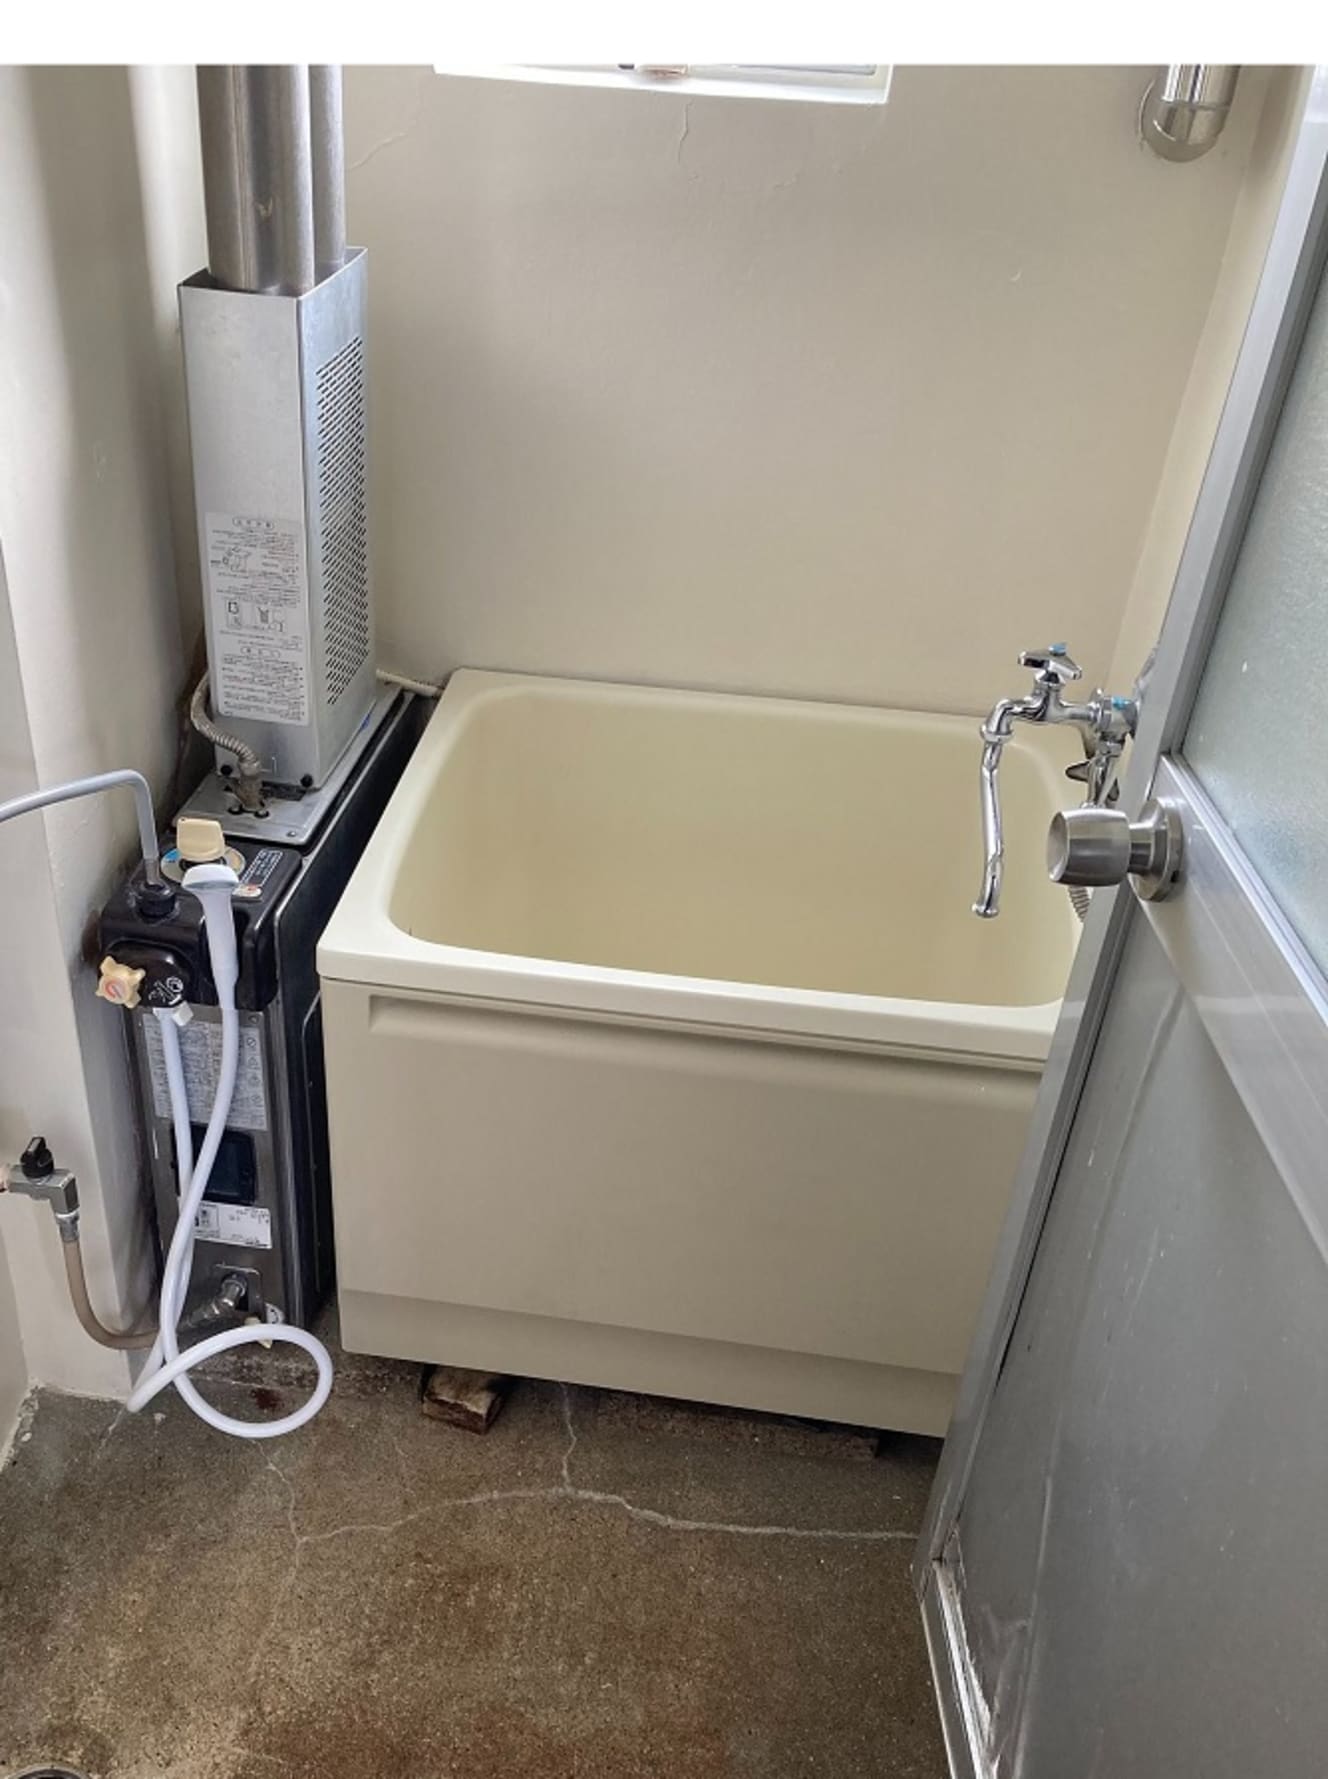 自衛隊官舎で見かける昭和の遺物・バランス釜。狭い浴槽の横にある装置で温水をつくる